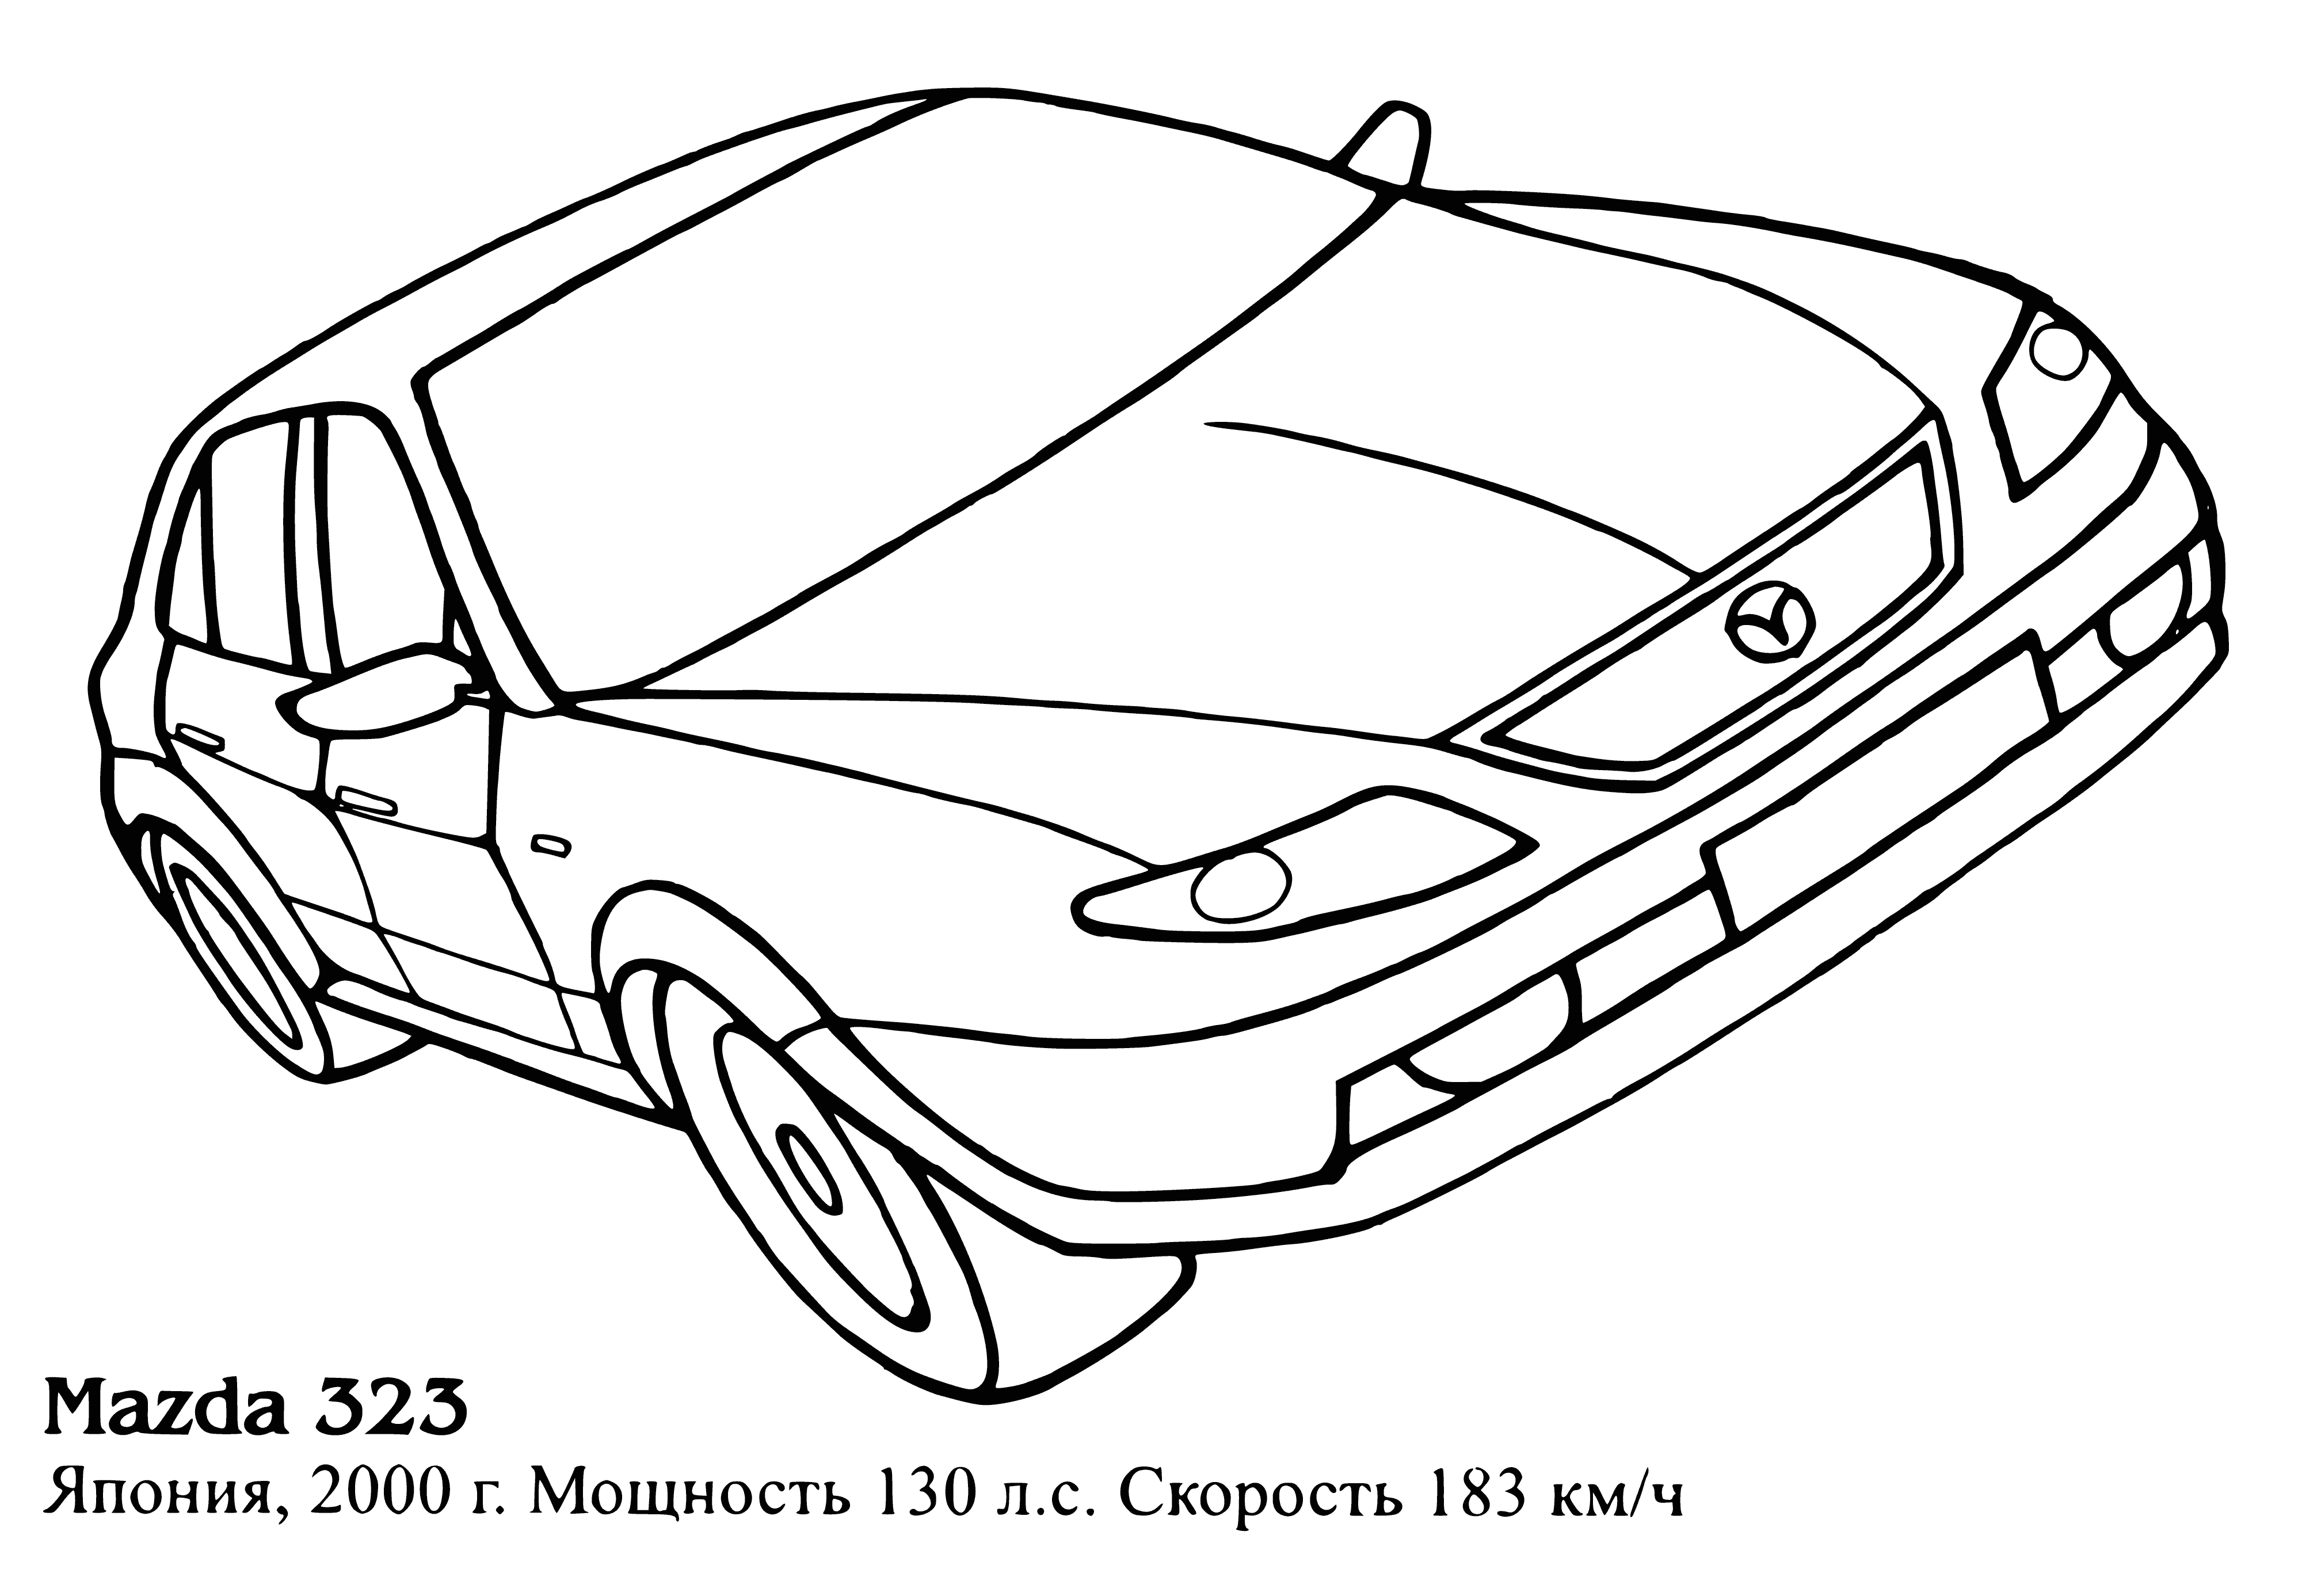 Mazda 323 boyama sayfası